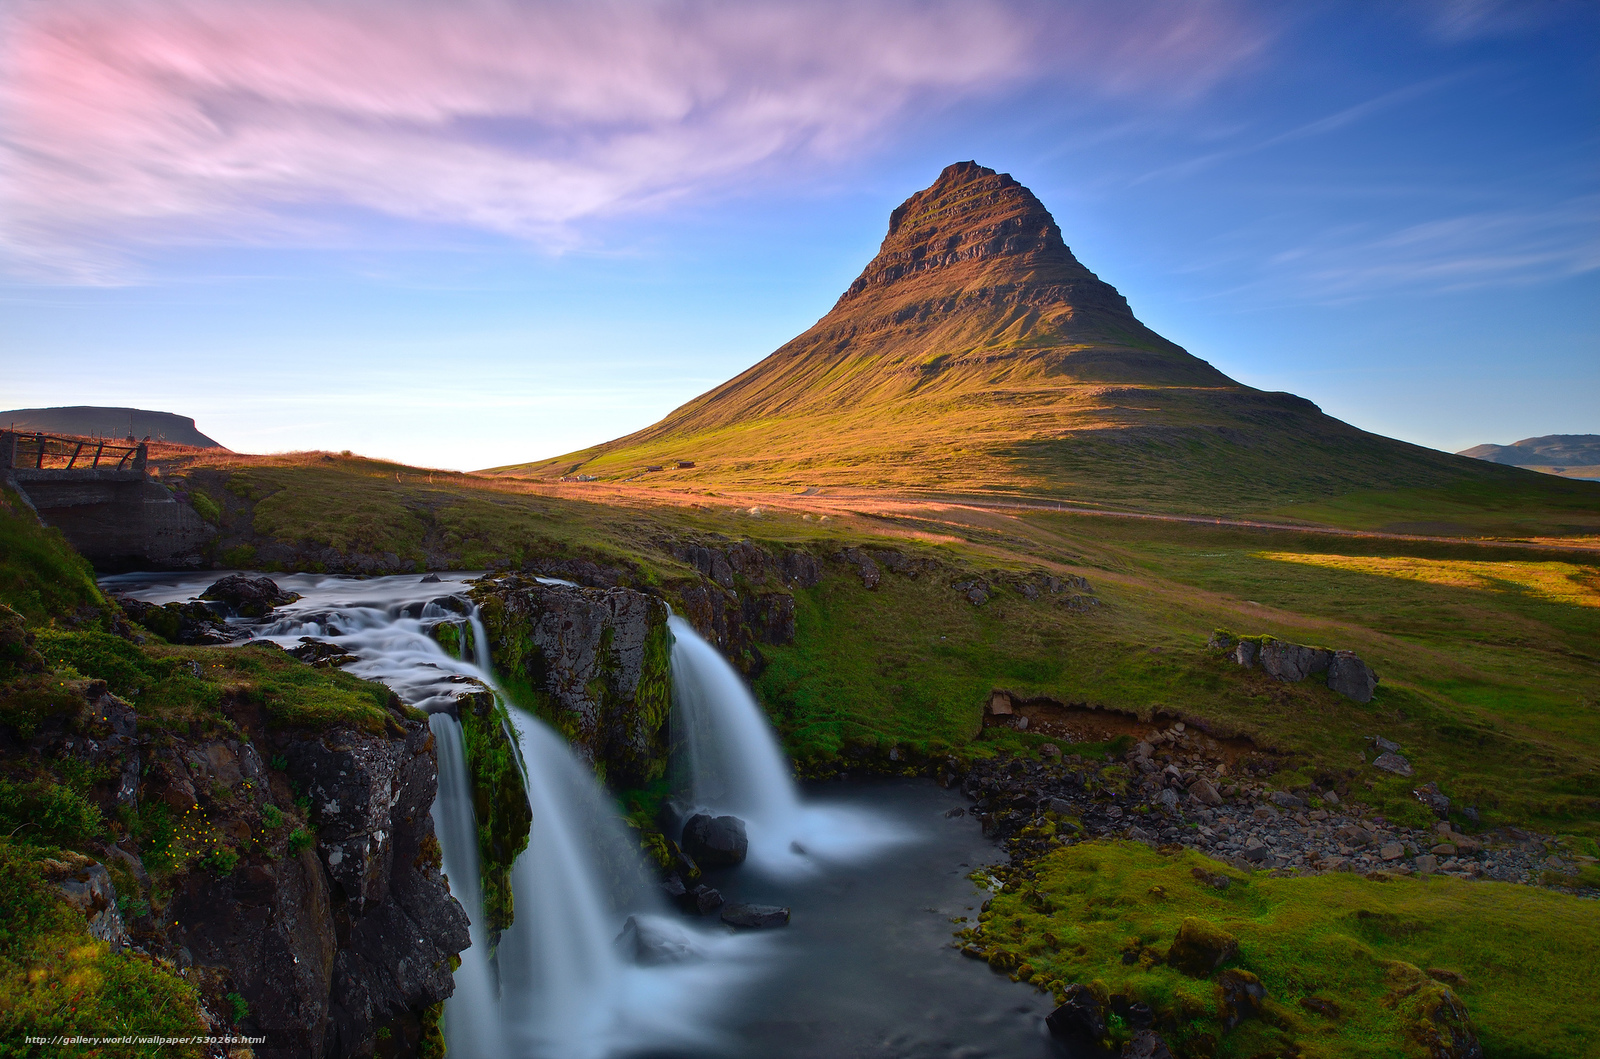 Thác nước Iceland là một trong những địa danh nổi tiếng và đẹp nhất thế giới. Nếu bạn yêu thích sự hoang sơ của thiên nhiên thì hãy xem những hình ảnh đẹp nhất về thác nước Iceland trên trang web của chúng tôi.